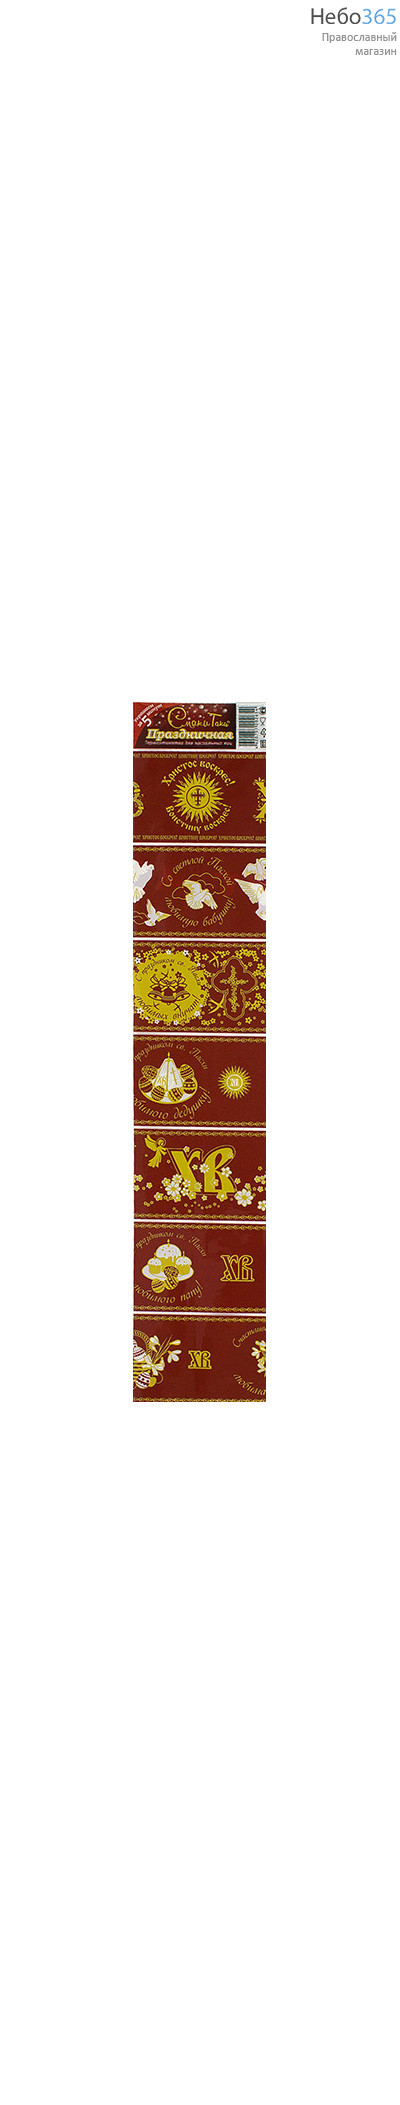  Наклейка пасхальная для яиц, из термоплёнки, в ассортименте с золотыми и белыми изображениями на красном фоне Праздничная, фото 1 